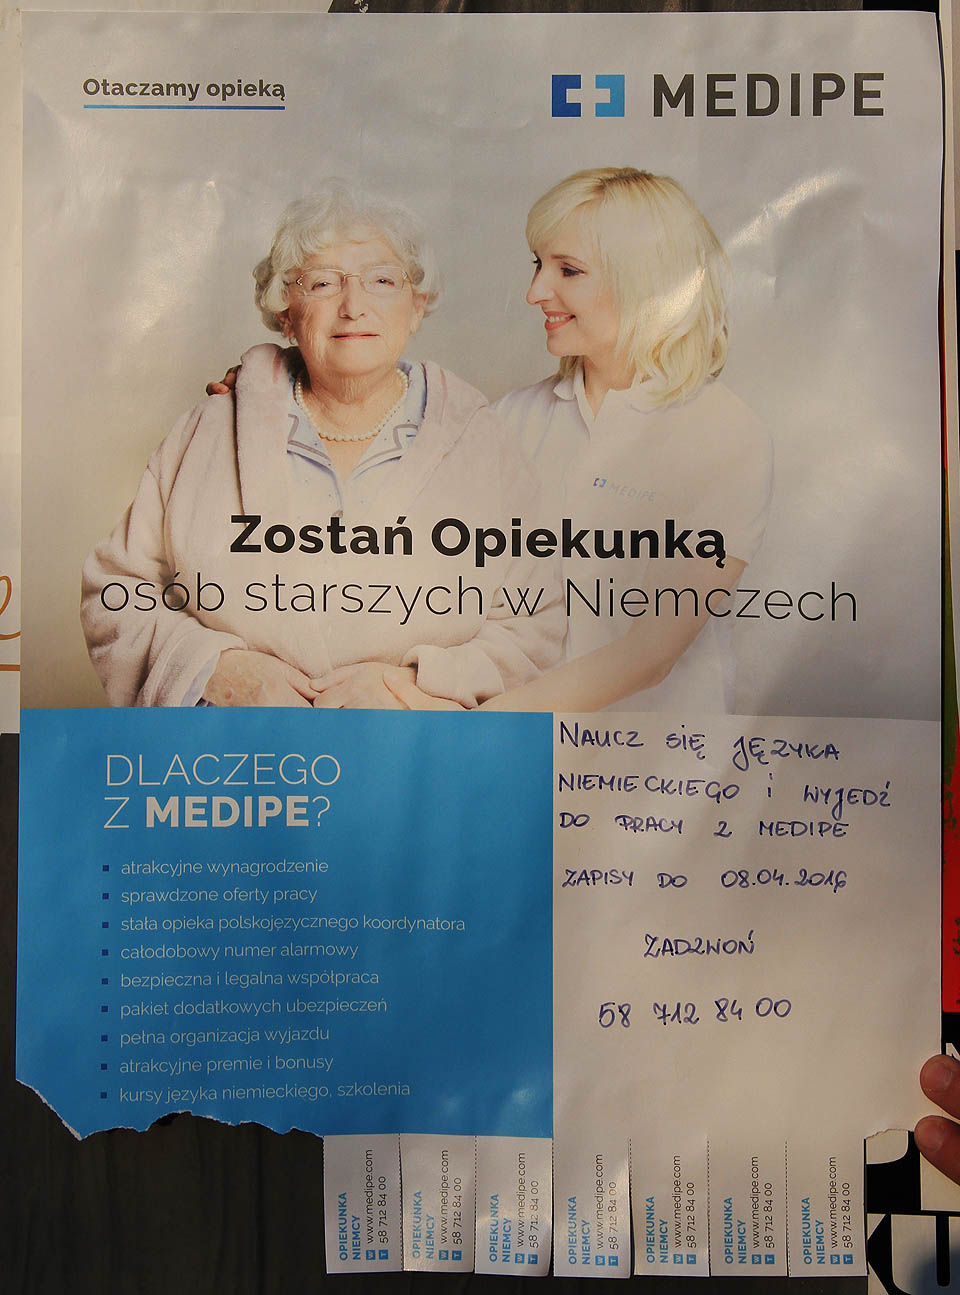 Plakát je zajímavý ze dvou důvodů: jednak má společnost MEDIPE stejné logo jako ČD Cargo, druhak je fascinující stav, kdy se polské pečovatelky jezdí starat o německé důchodce.